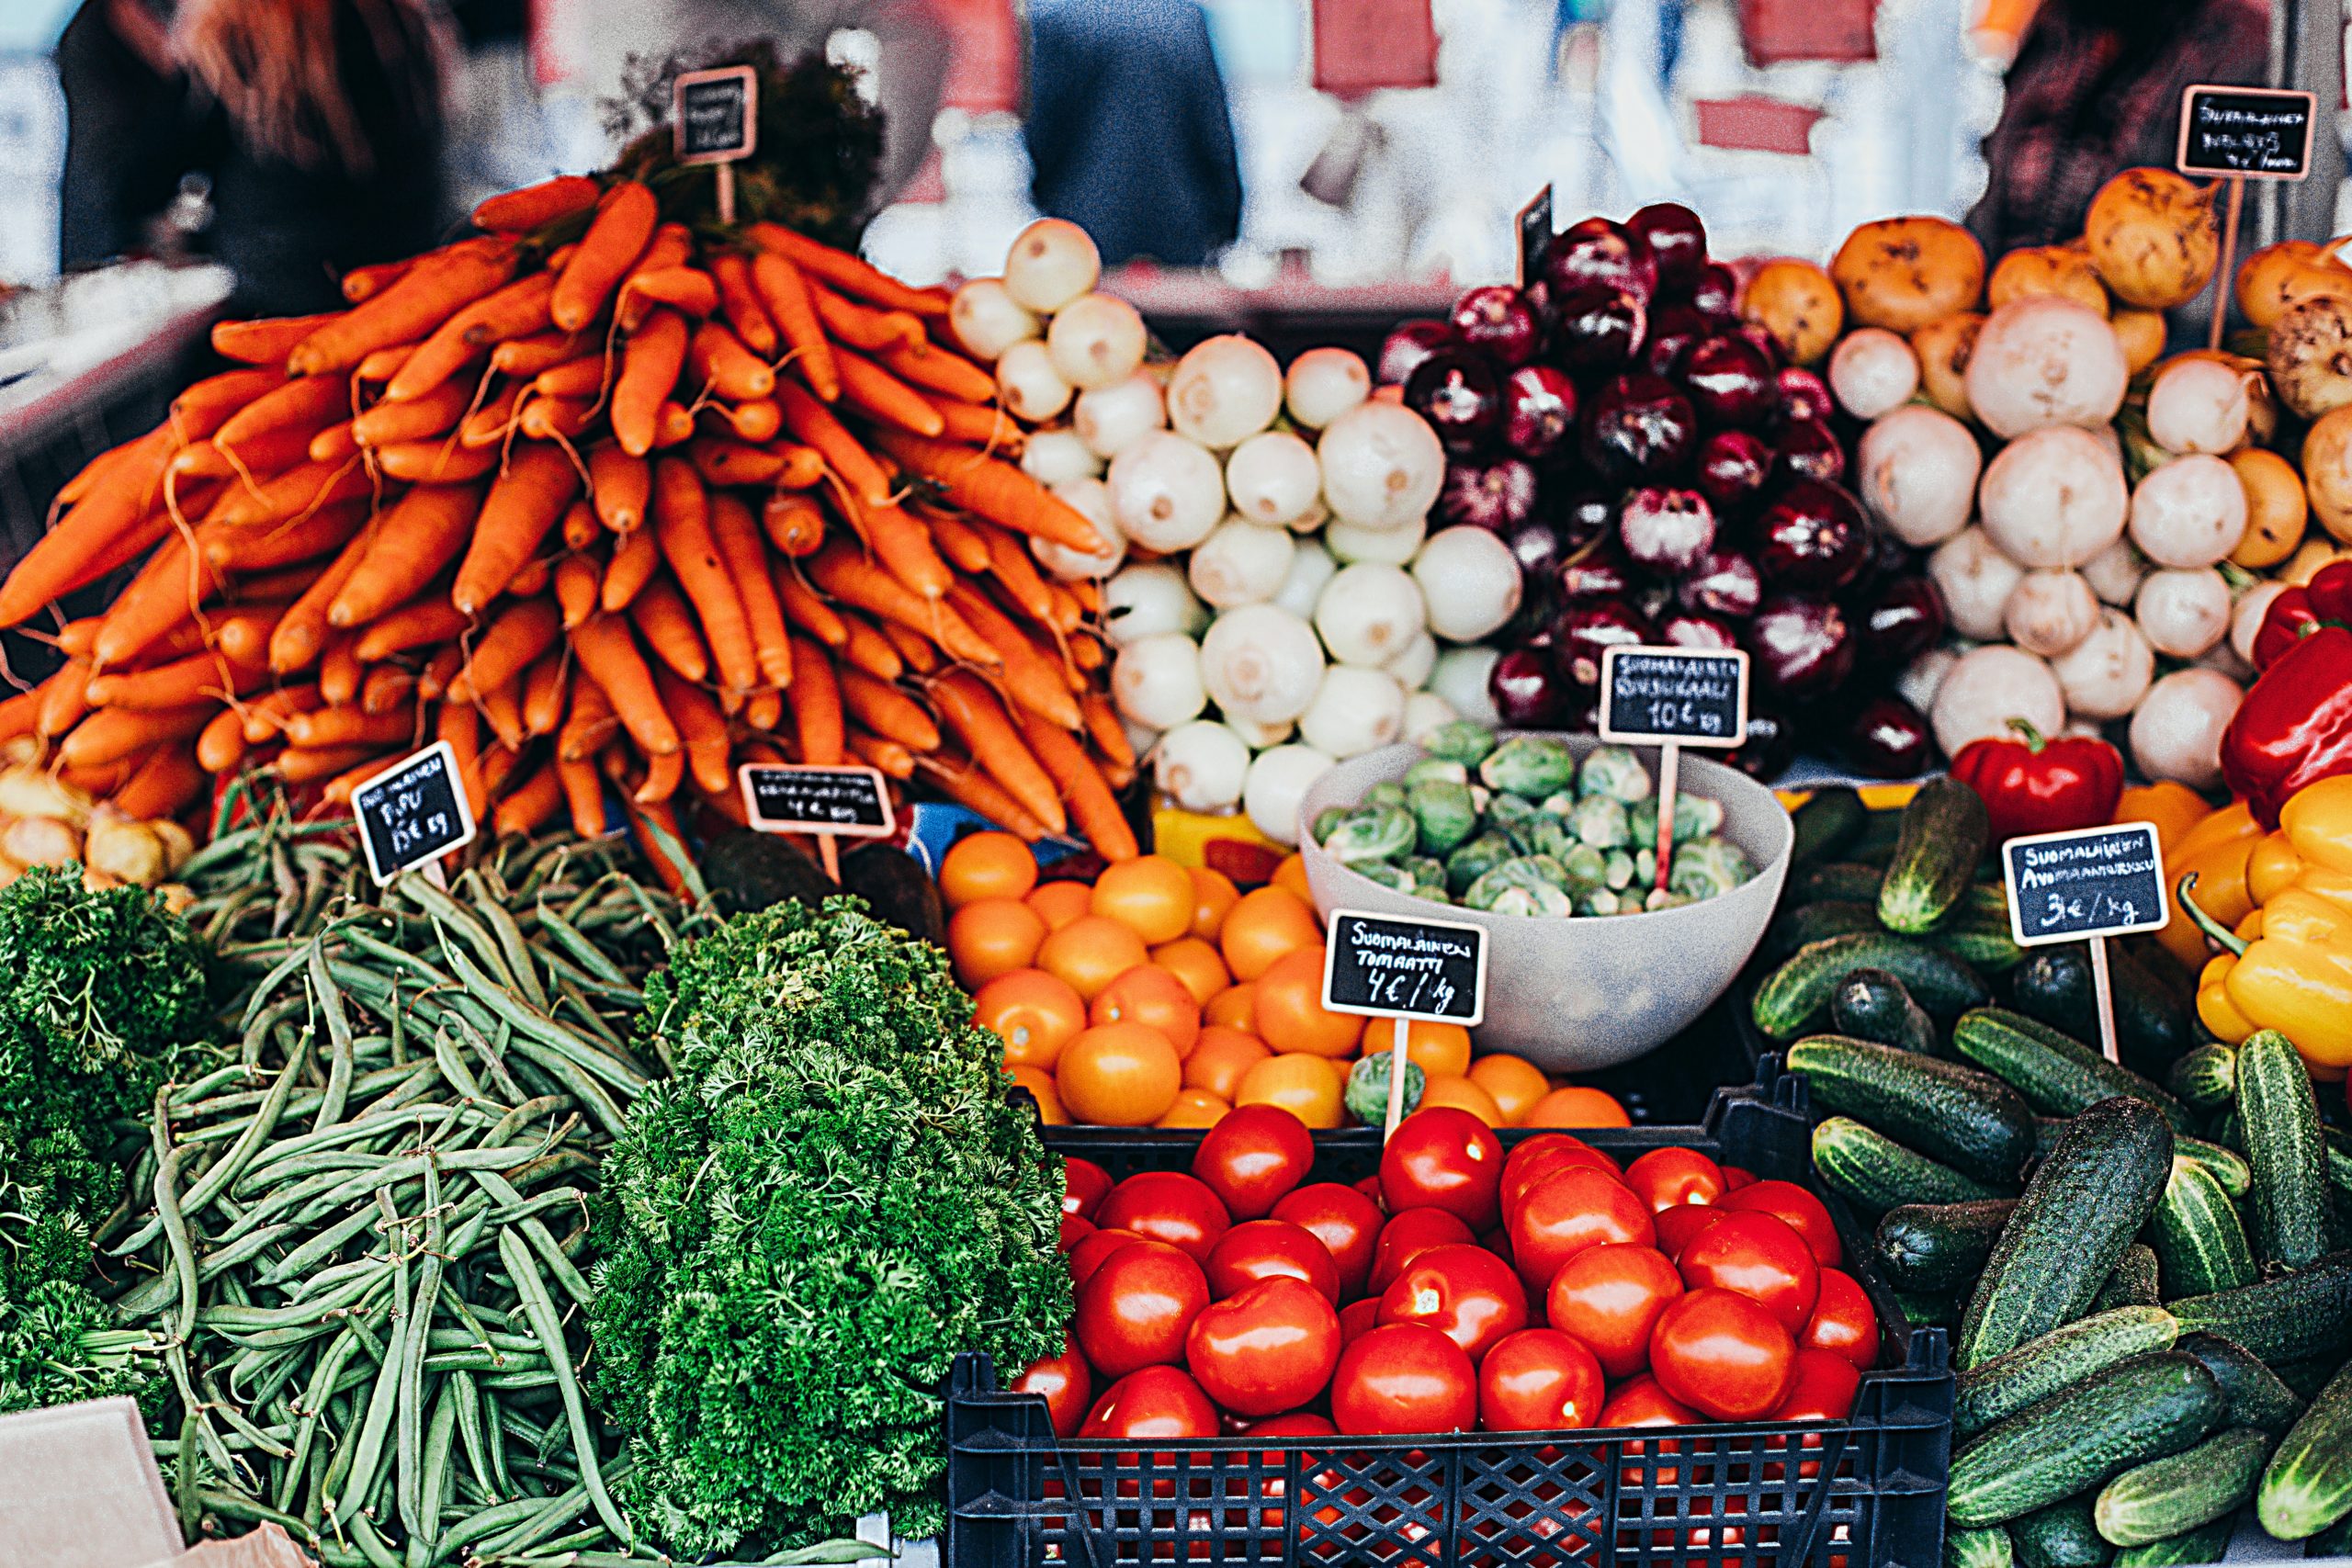 “El Valor dels aliments”, nou projecte de comunicació ambiental